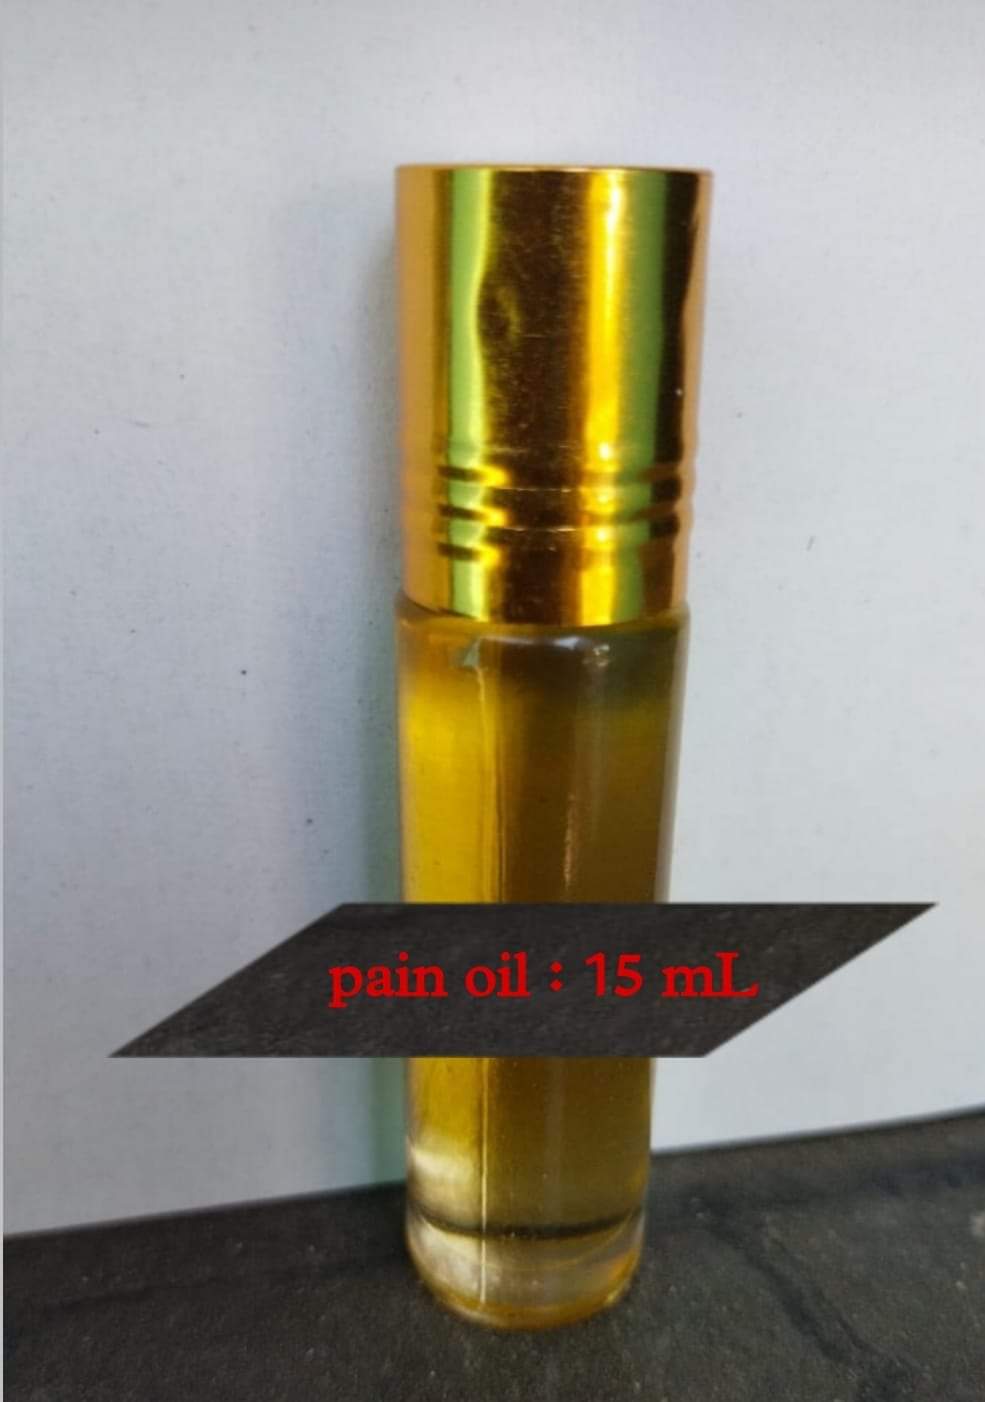 PAIN RELIEF MAGIC OIL-15 ML